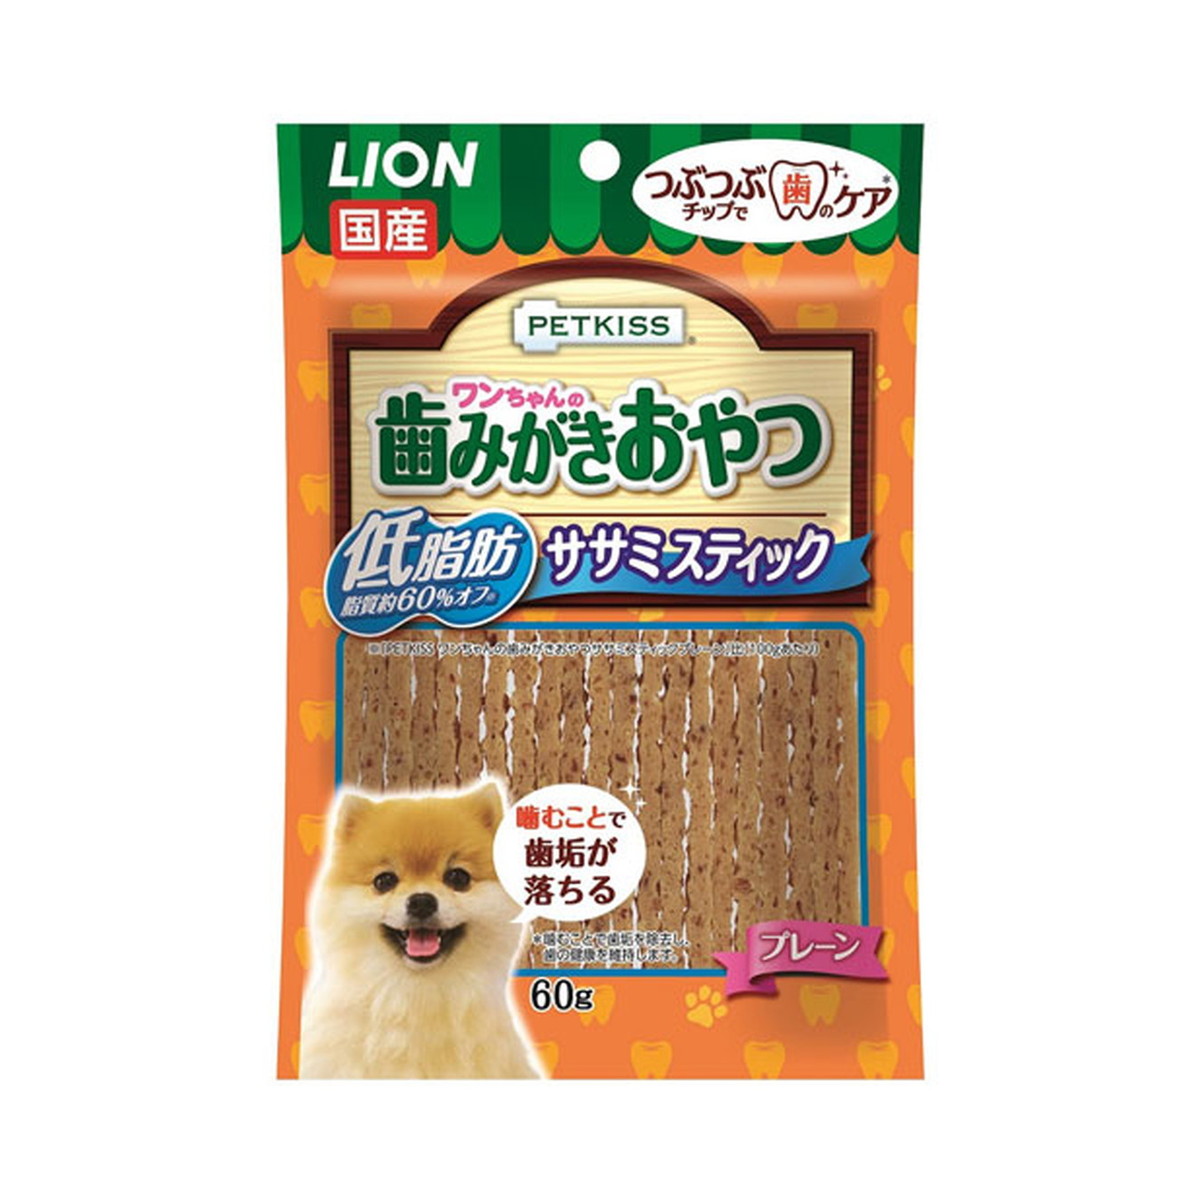 ライオン商事 Petkiss ペットキッス プレーン 犬用 ワンちゃんの ササミスティック 60g 低脂肪